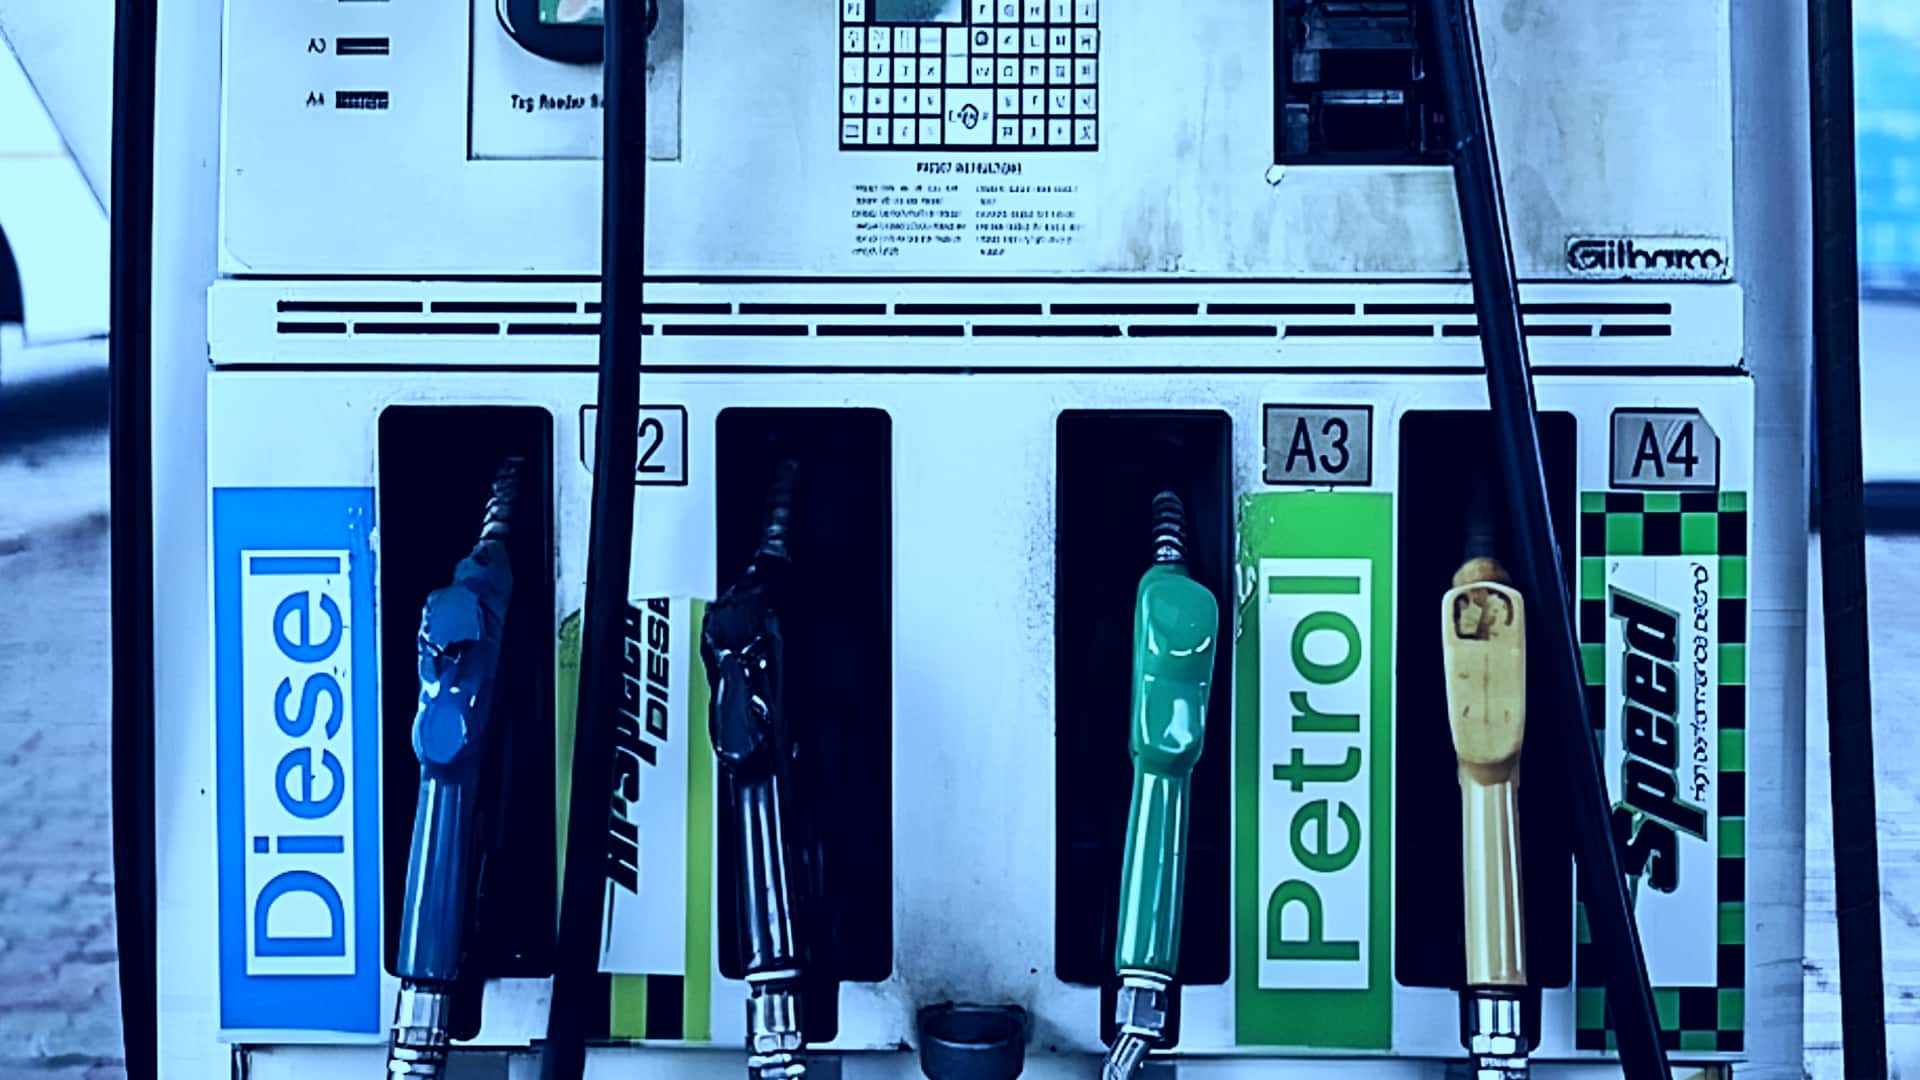 पेट्रोल-डीजल की कीमतें: 28 दिसंबर के लिए नए दाम जारी, कितने बदले? 